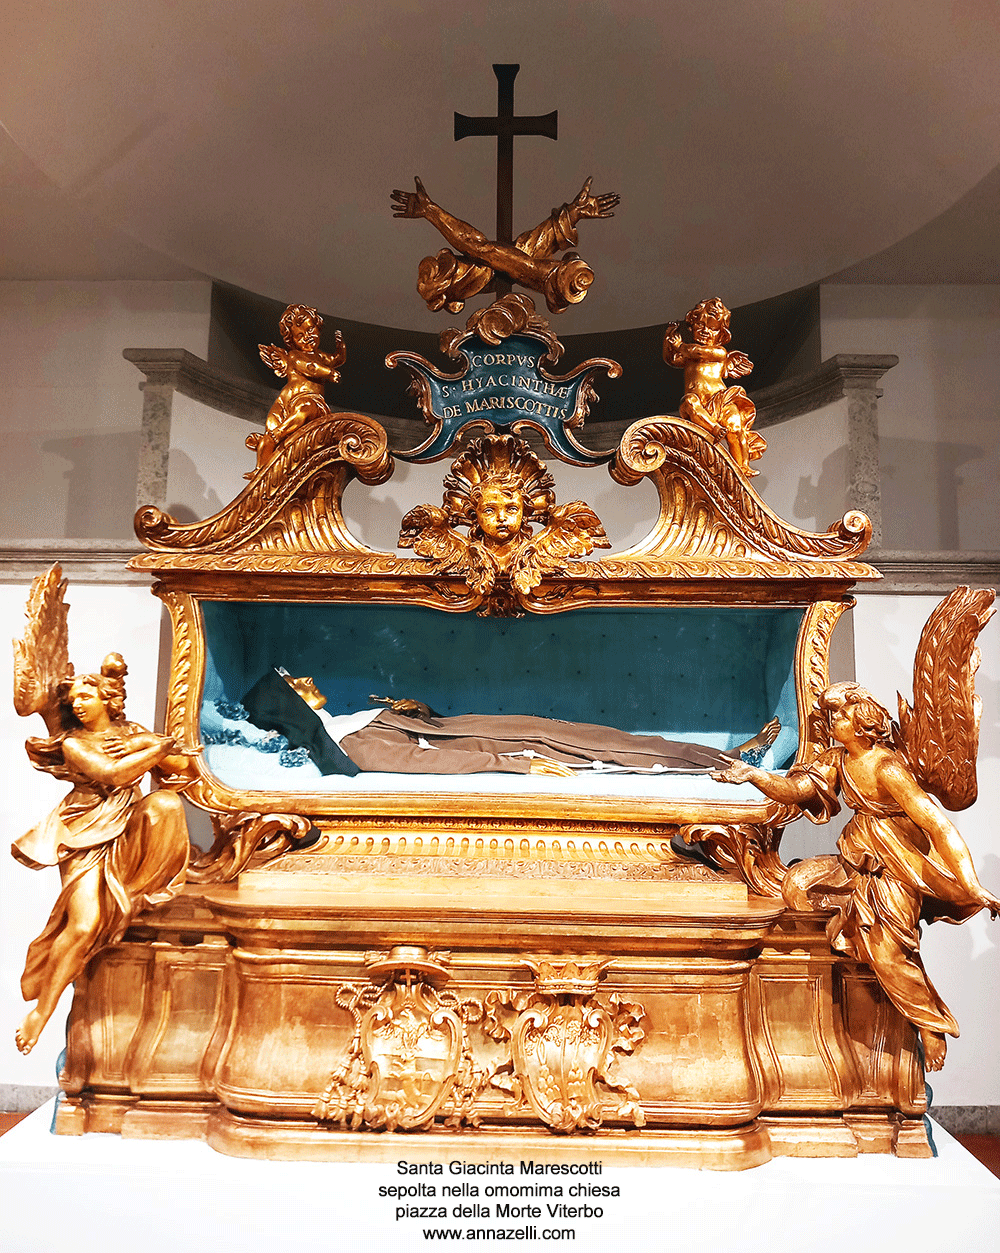 il corpo santa giacinta marescotti sepolto chiesa piazza della morte viterbo